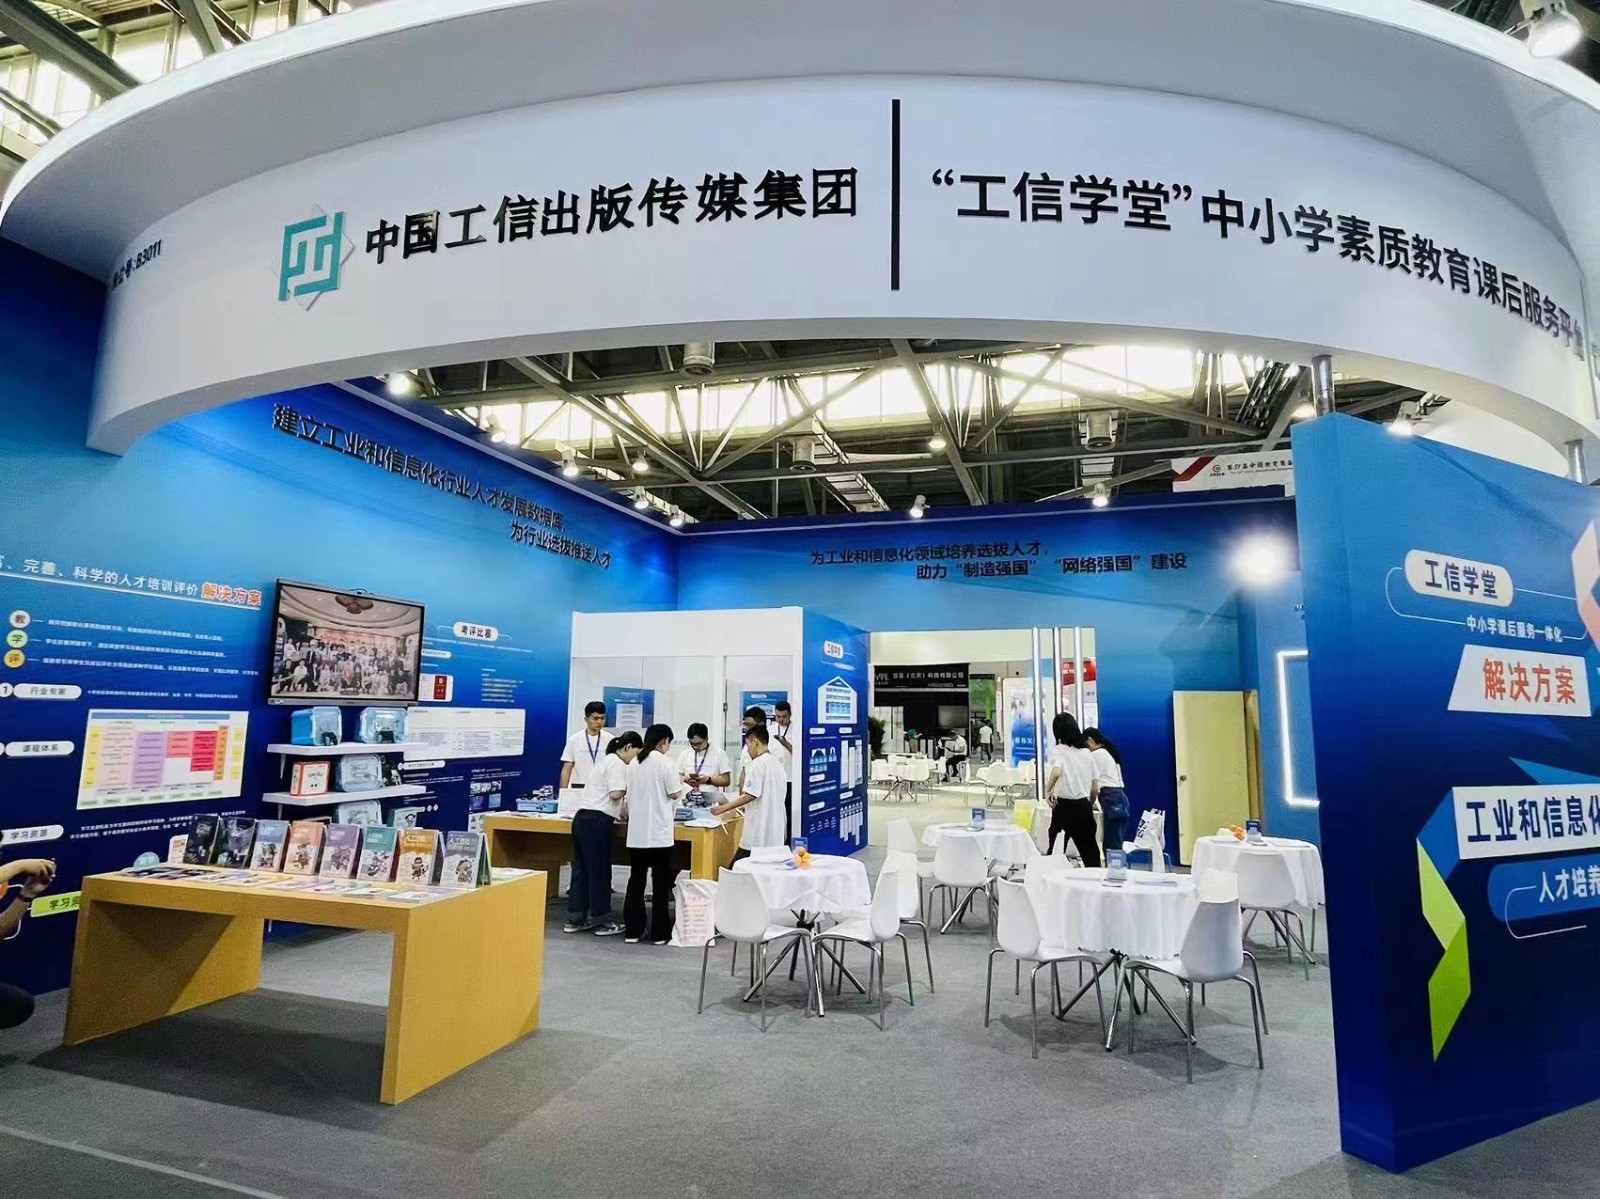 青少年信息技术培养工程亮相第81届中国教育装备展示会